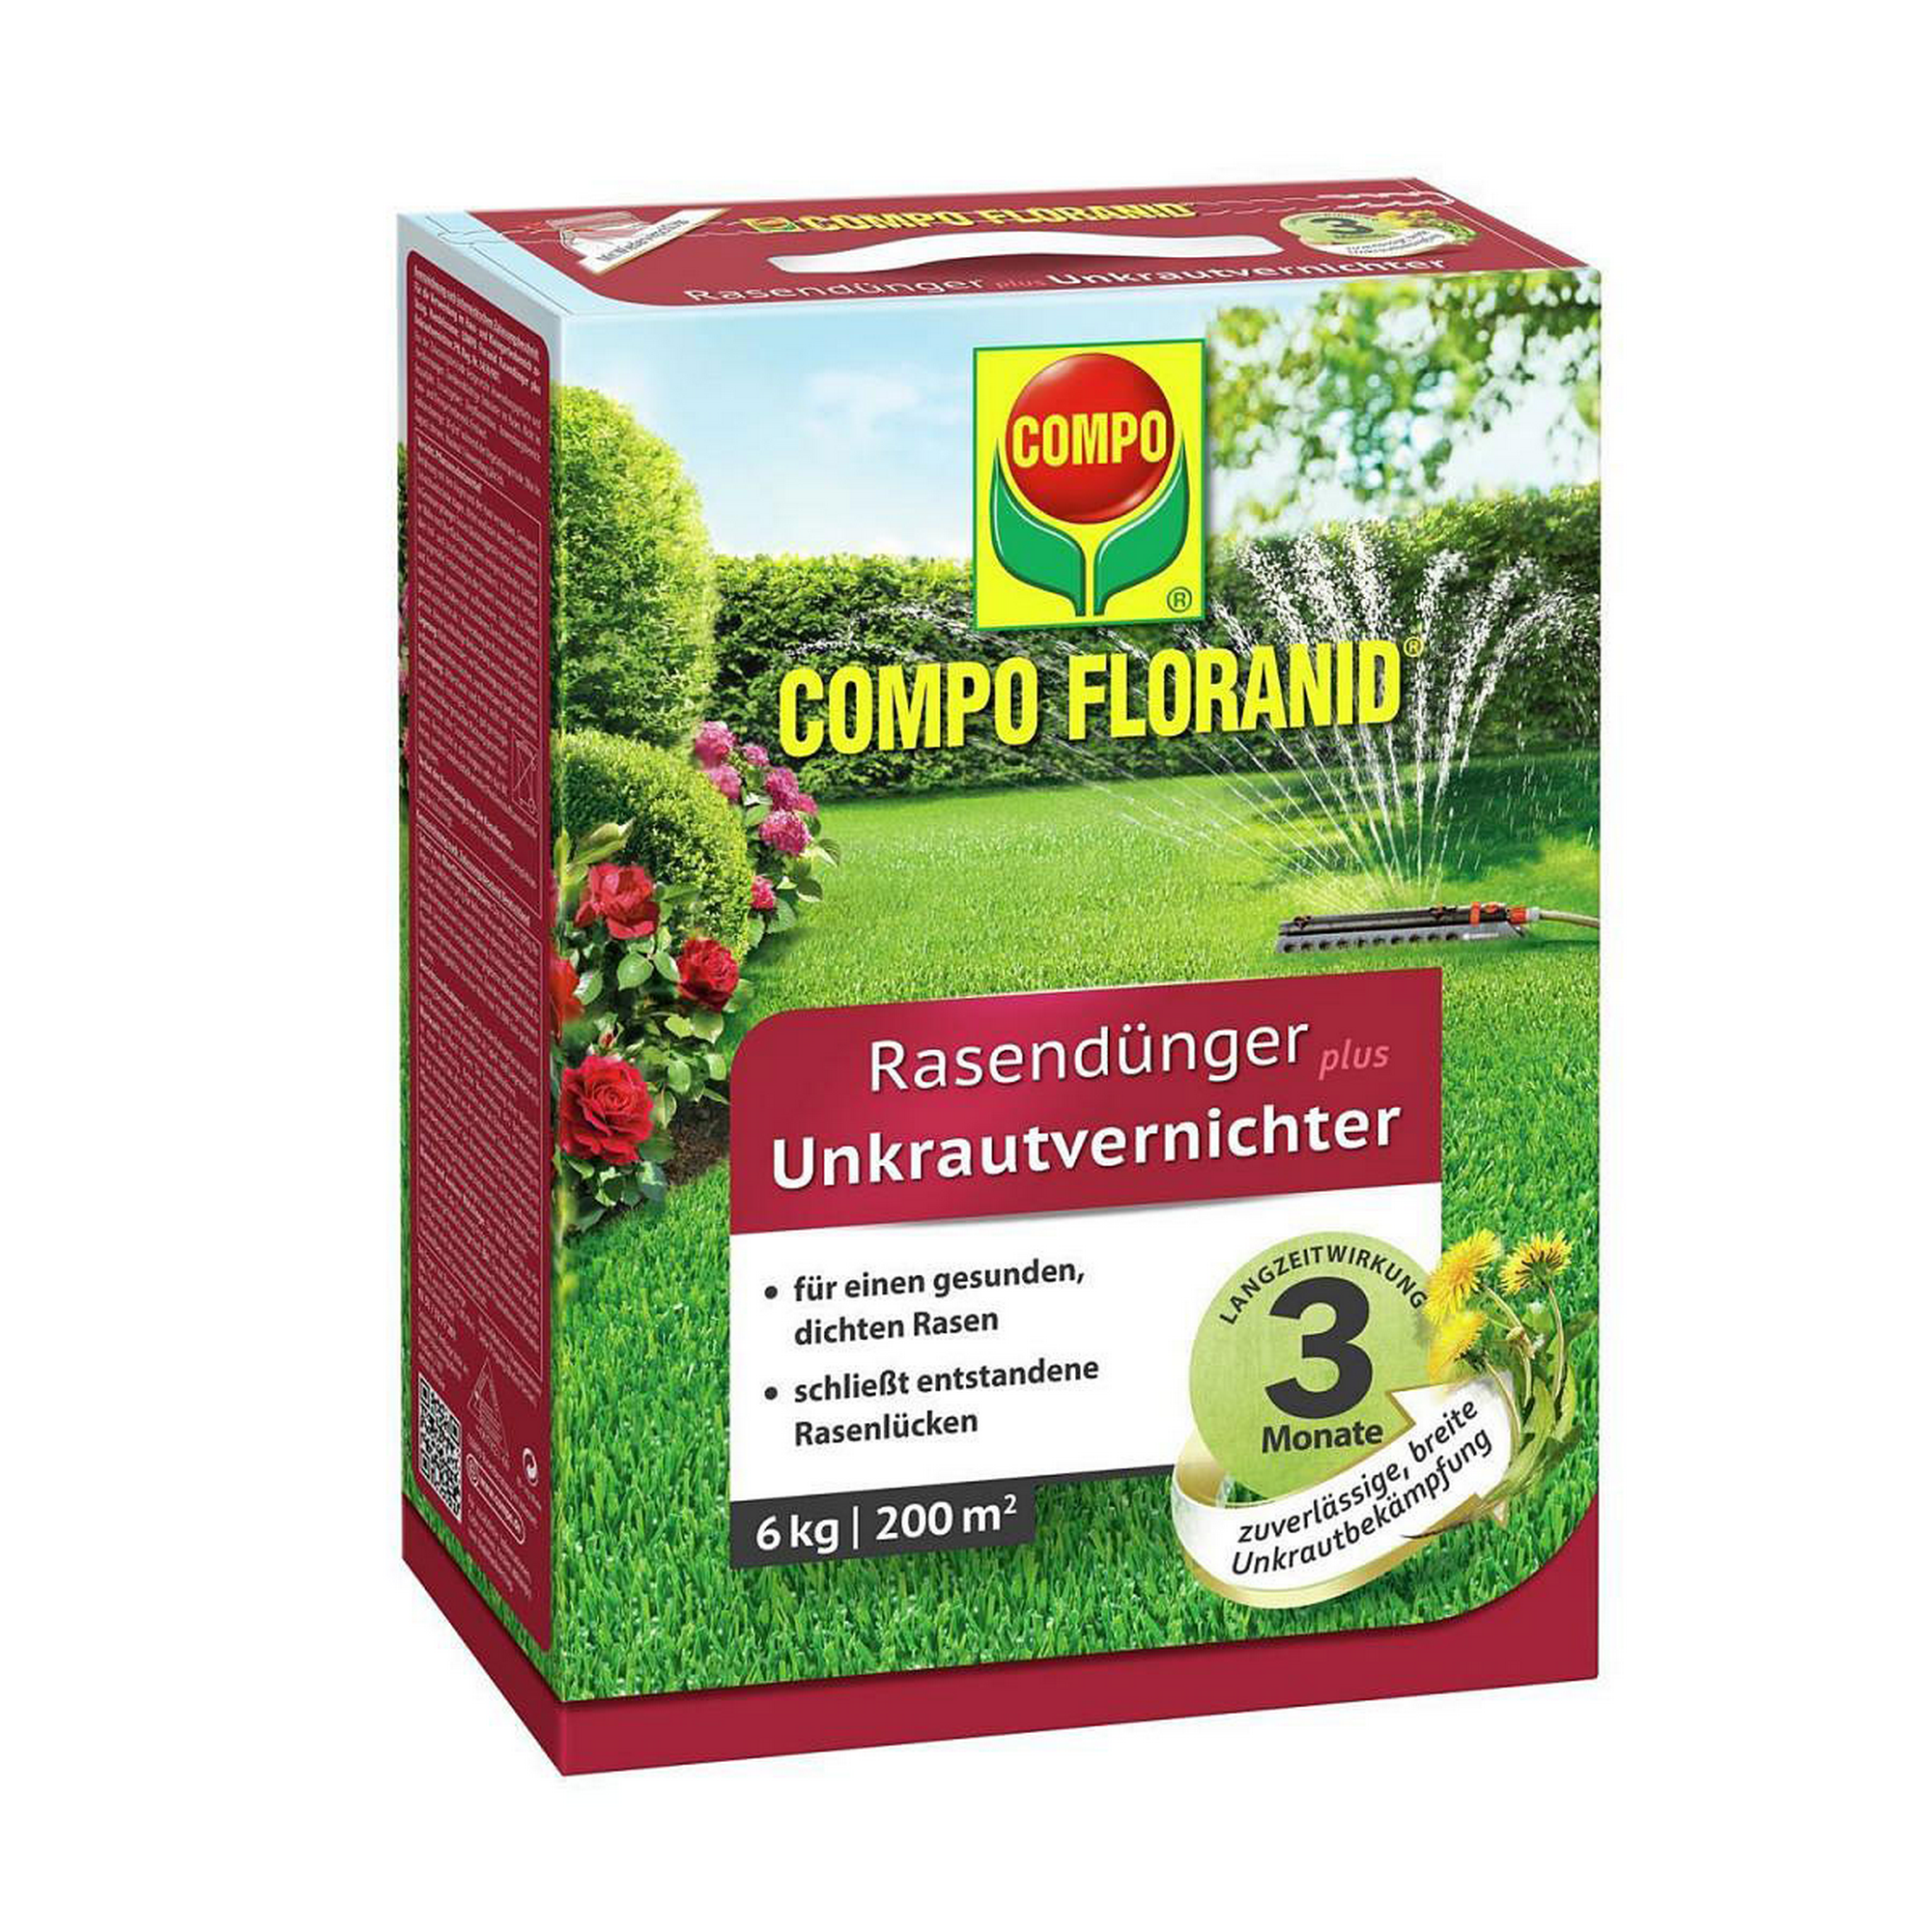 Floranid Rasendünger plus Unkrautvernichter 6 kg + product picture